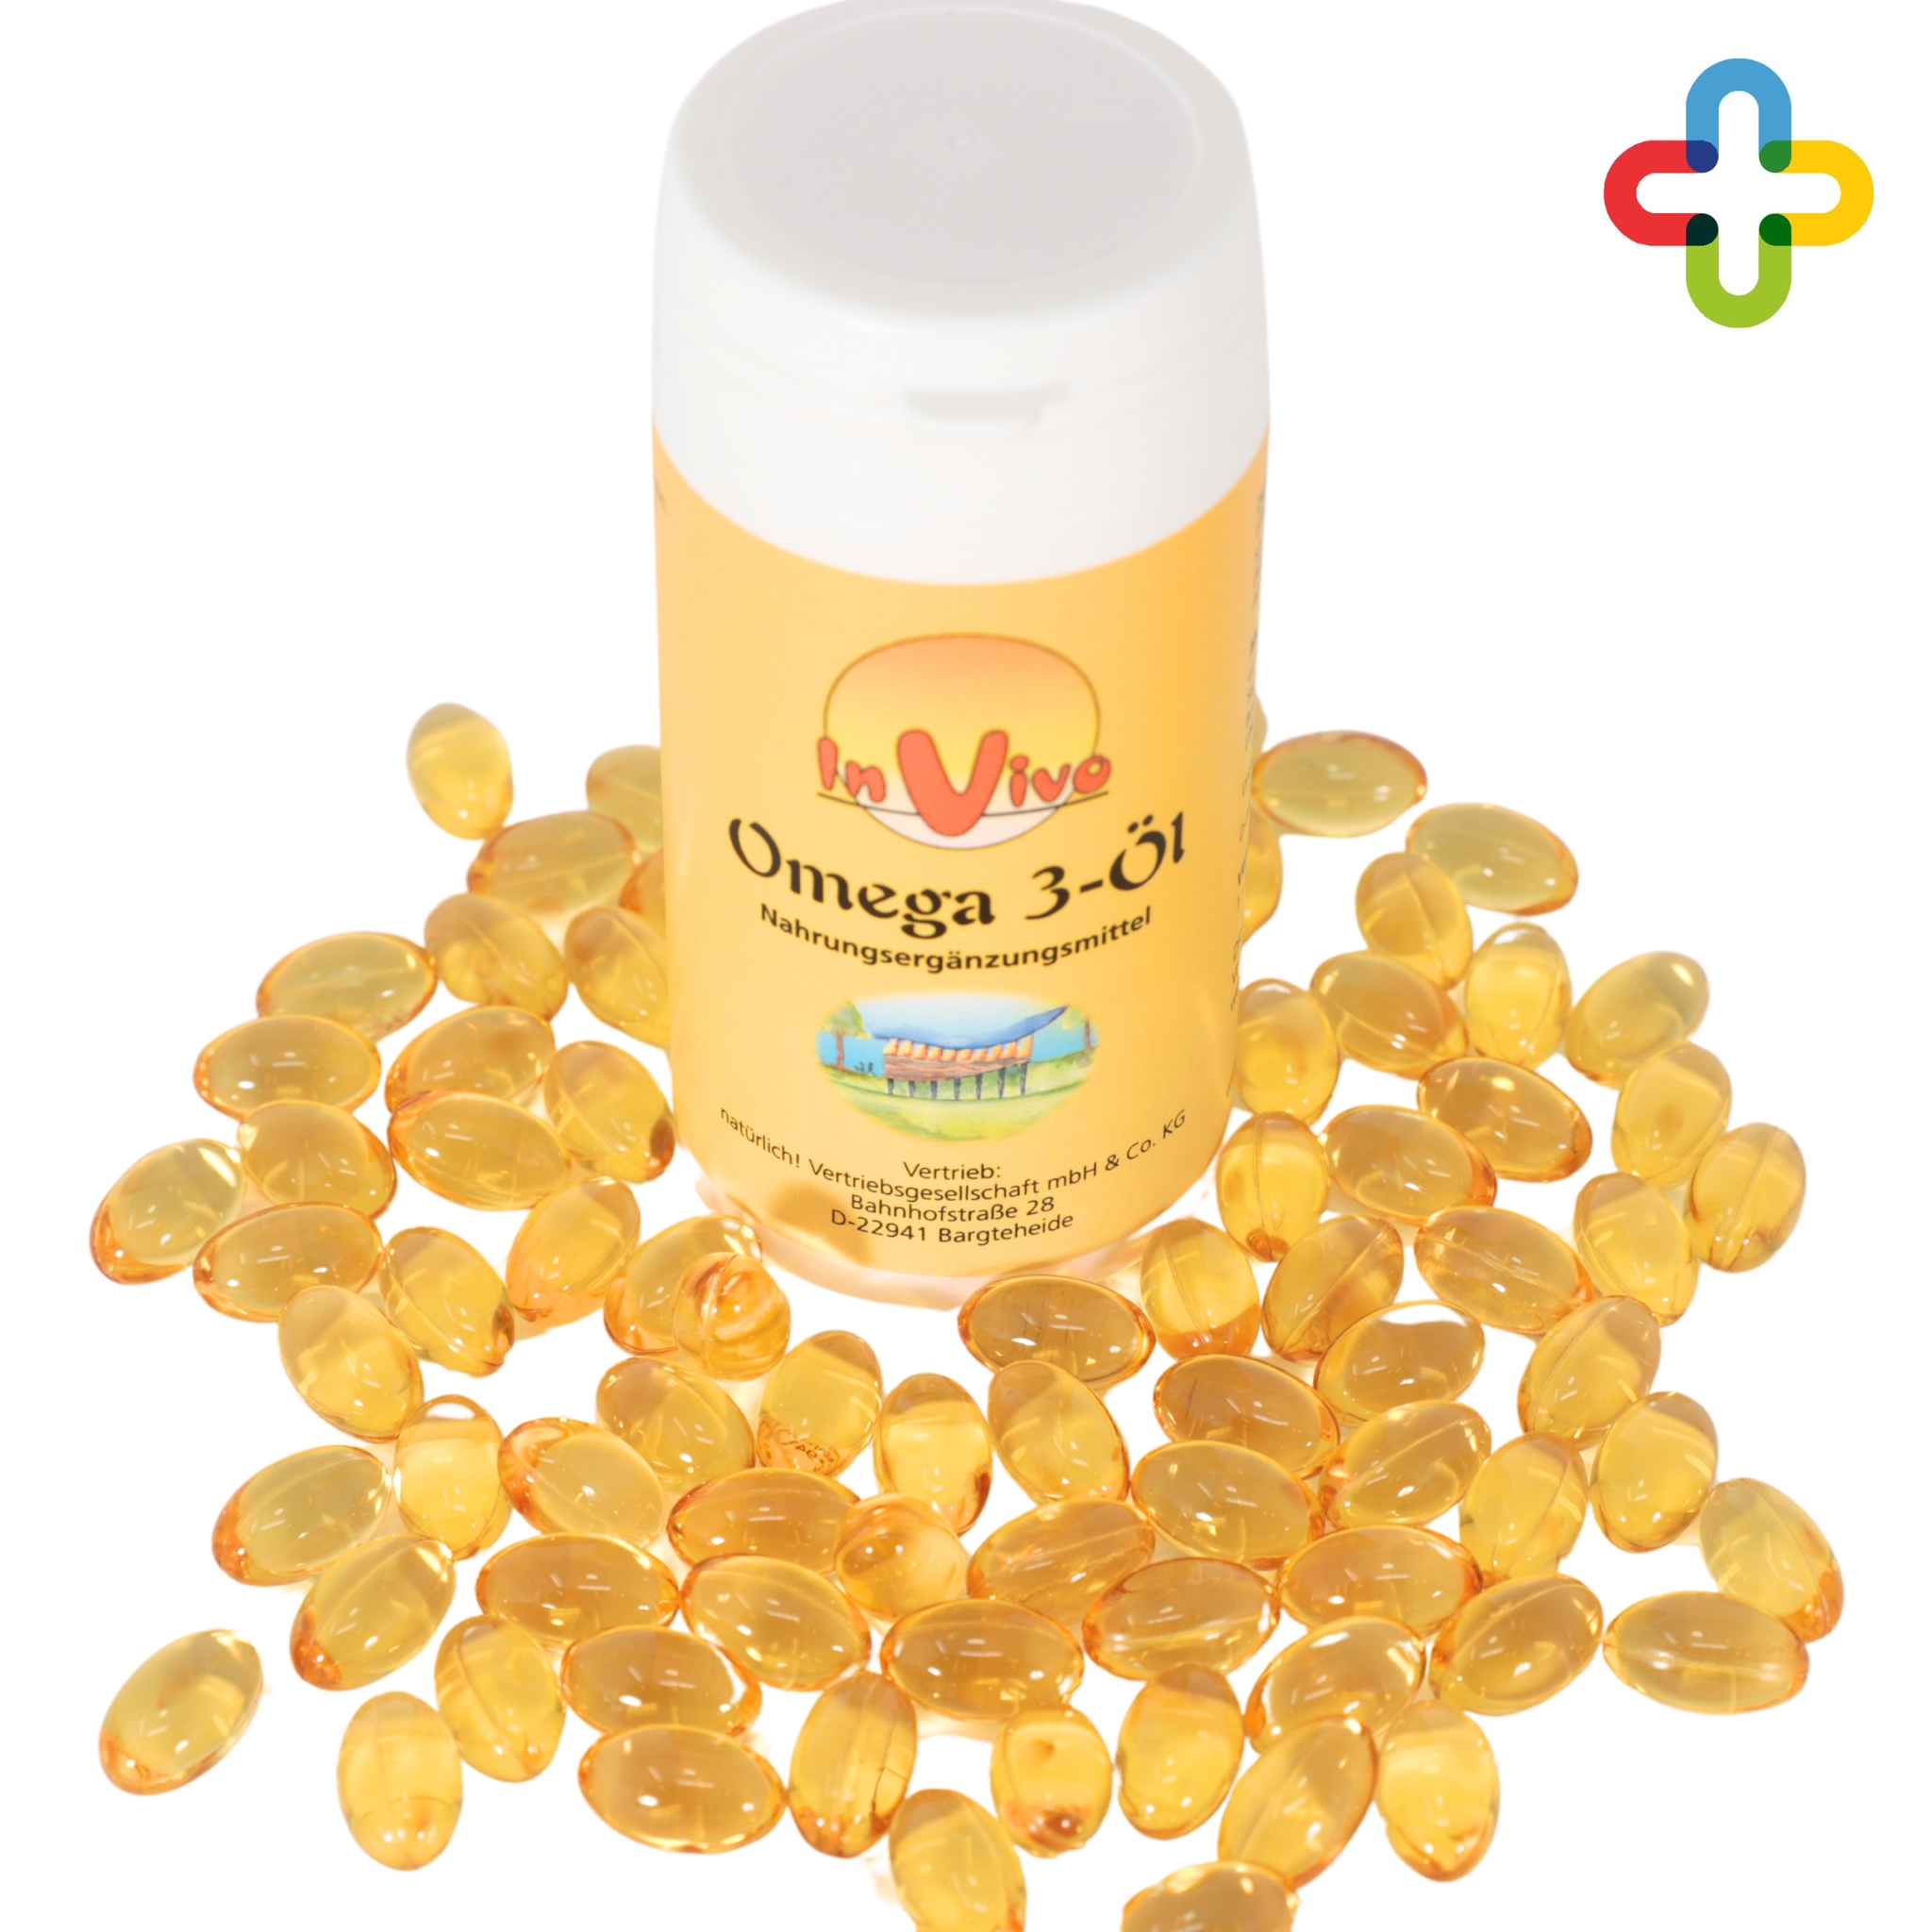 In Vivo Omega 3-Öl